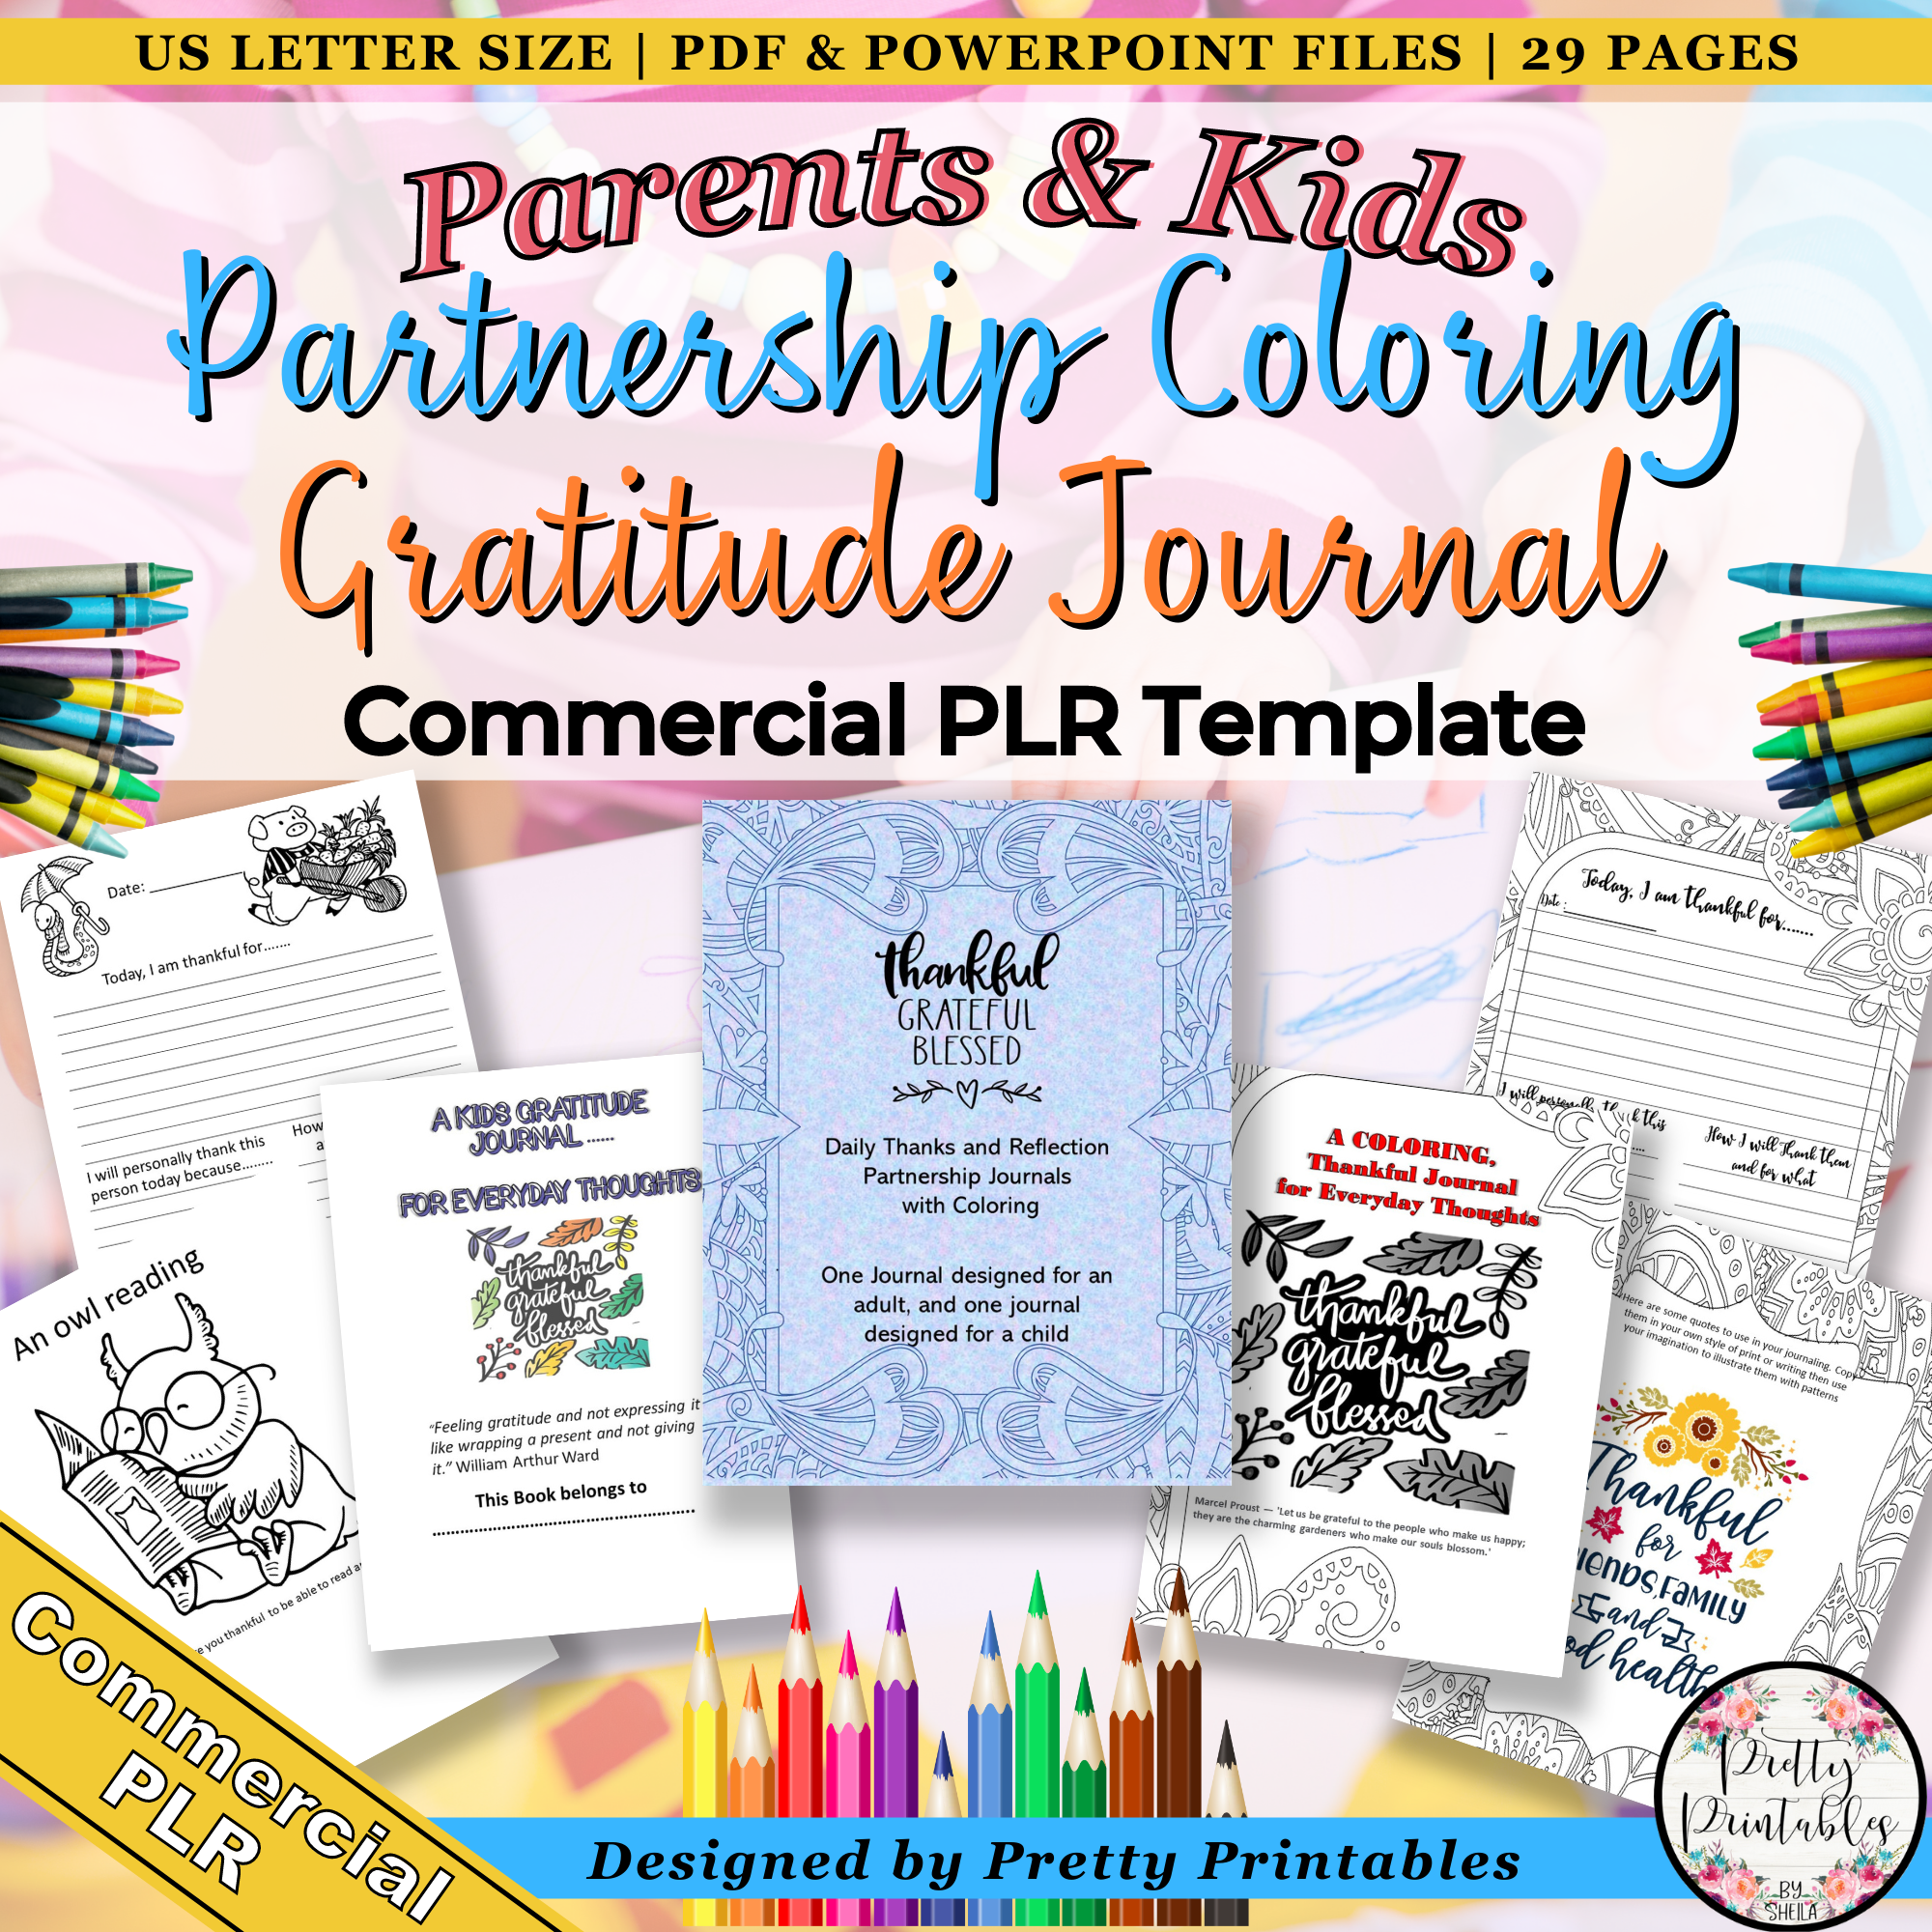 Parents & Kids Partnership Coloring Gratitude Journal Commercial PLR Templates